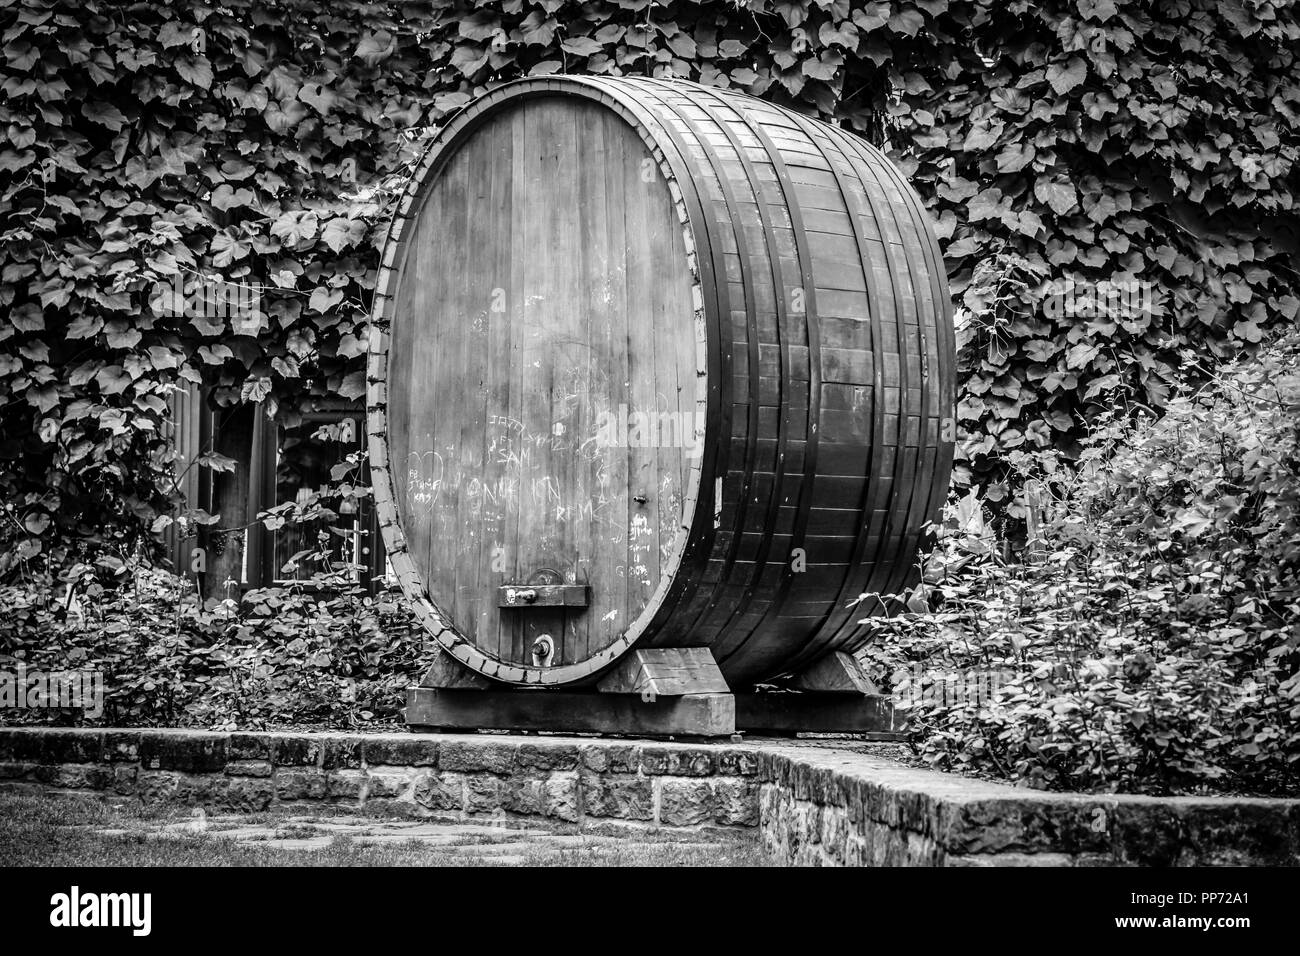 Immer noch in Gebrauch, eine riesige alte Eiche Weinfass mit einem funktionierenden Zapfen in einem Garten in Straßburg, Frankreich Stockfoto